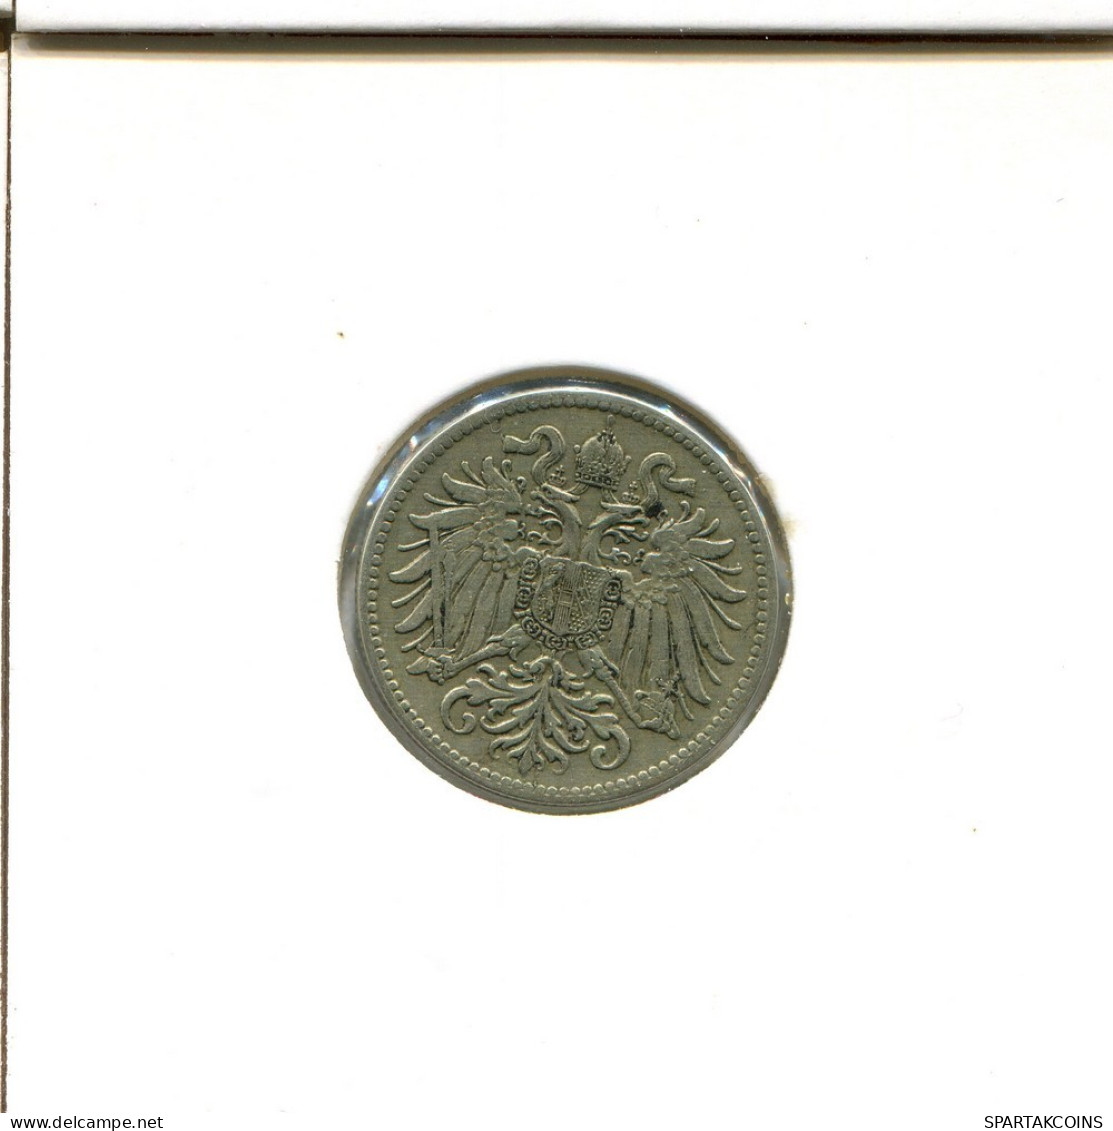 10 HELLER 1915 AUSTRIA Coin #AT524.U.A - Oesterreich